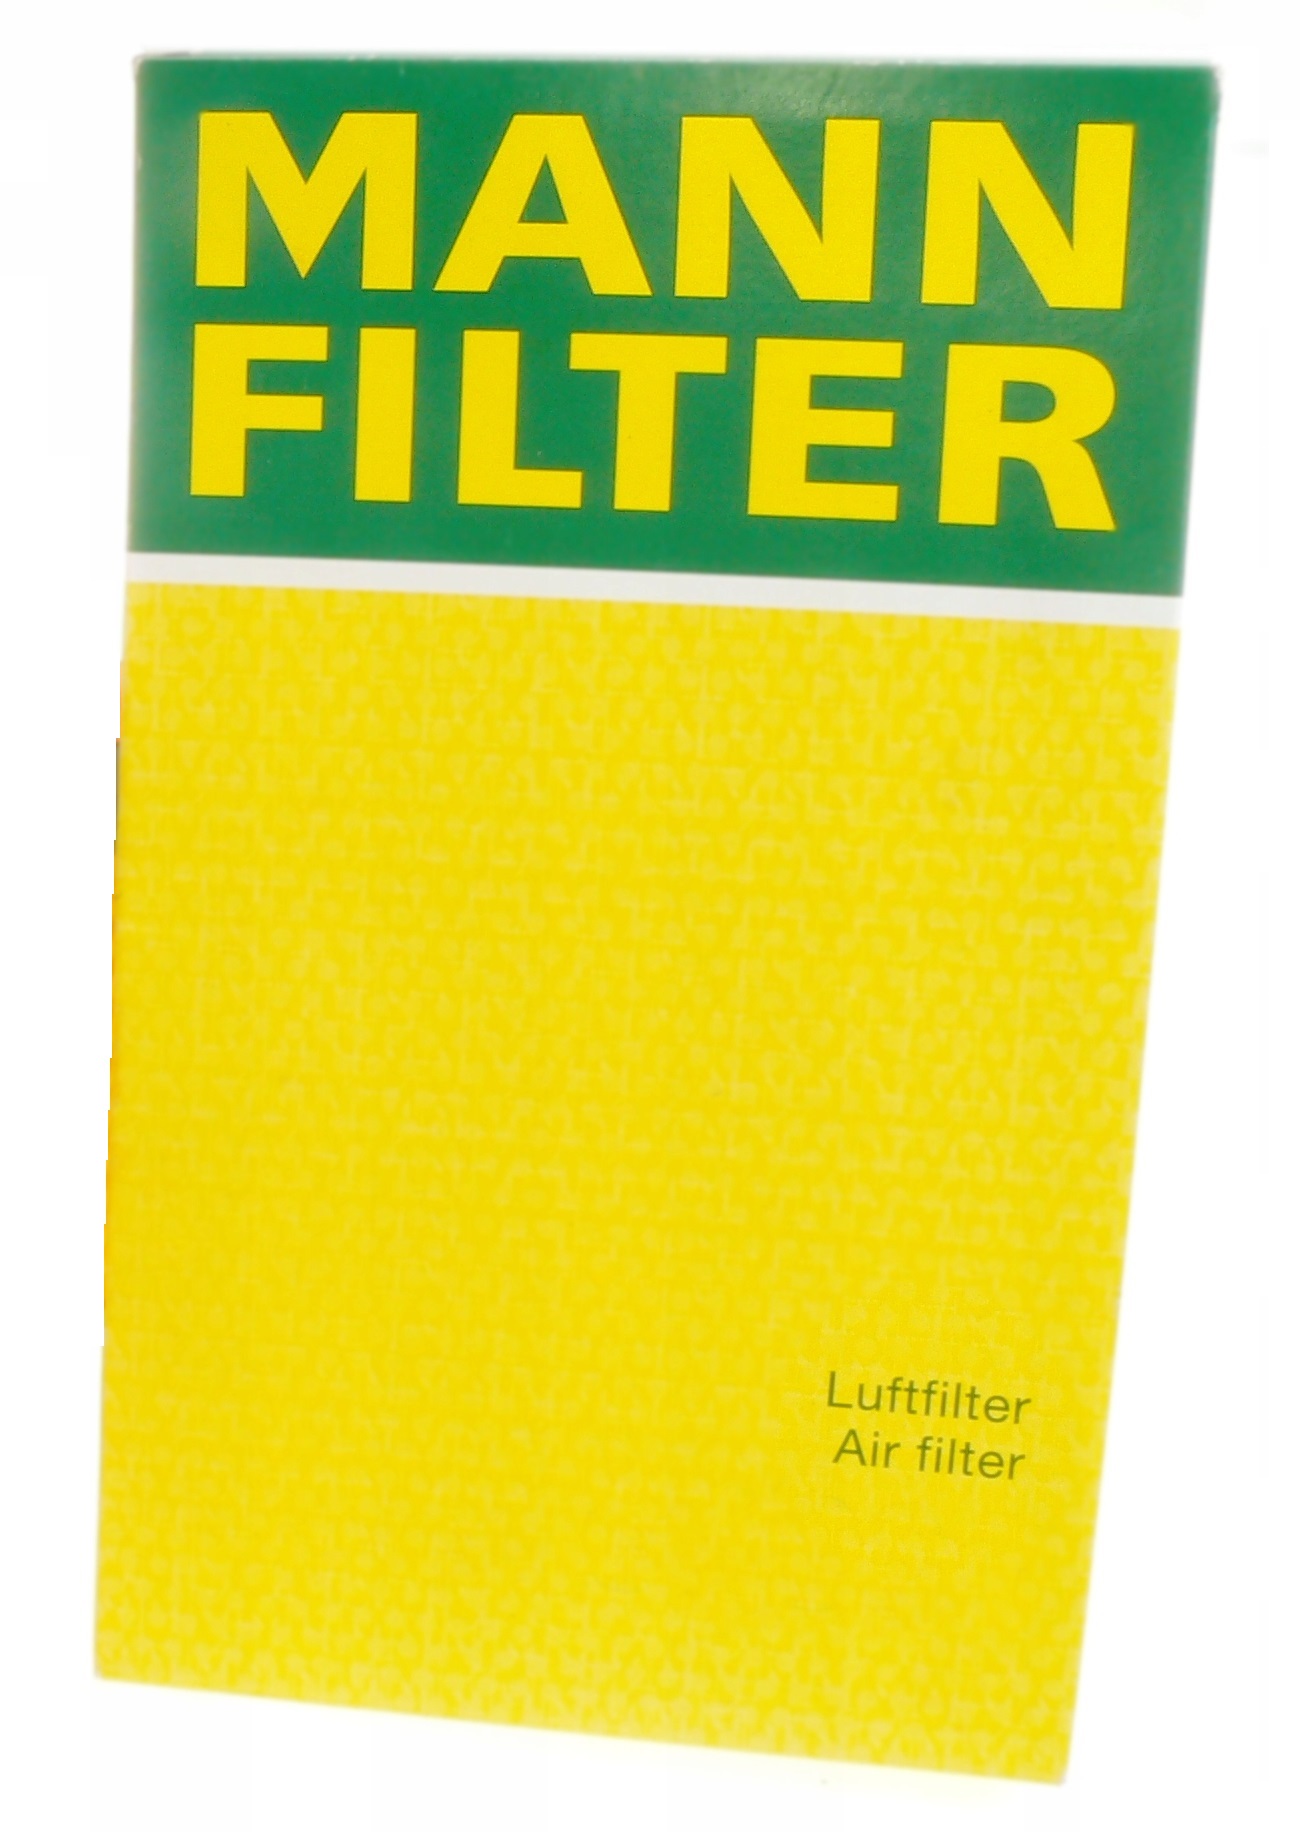 MANN-FILTER LUFTFILTER HONDA C35008 